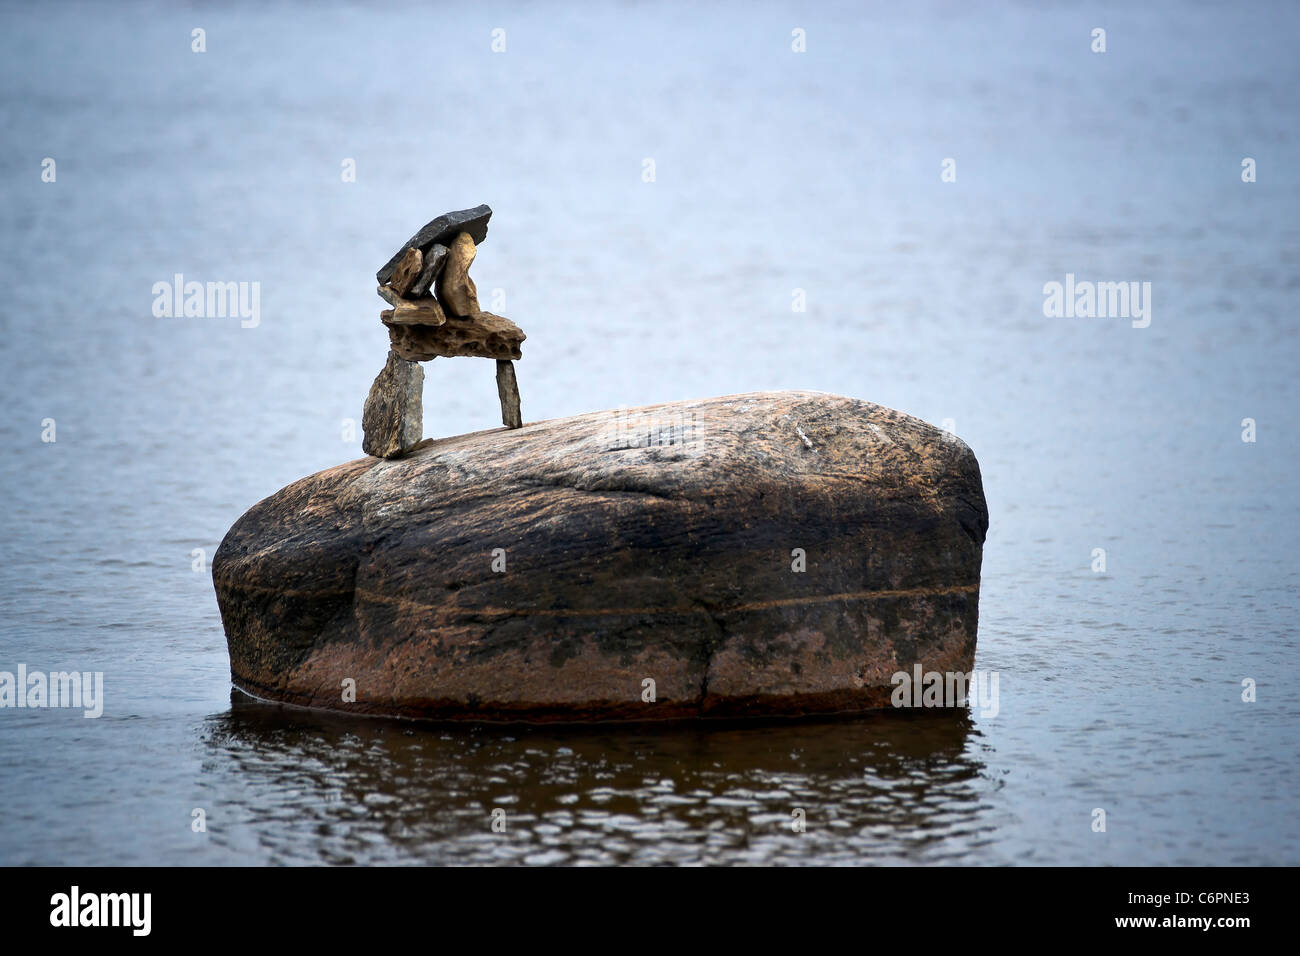 Un pequeño inuksuk (inuckshuk) se sitúa en la cima de una roca solitaria en el agua circundante. Foto de stock